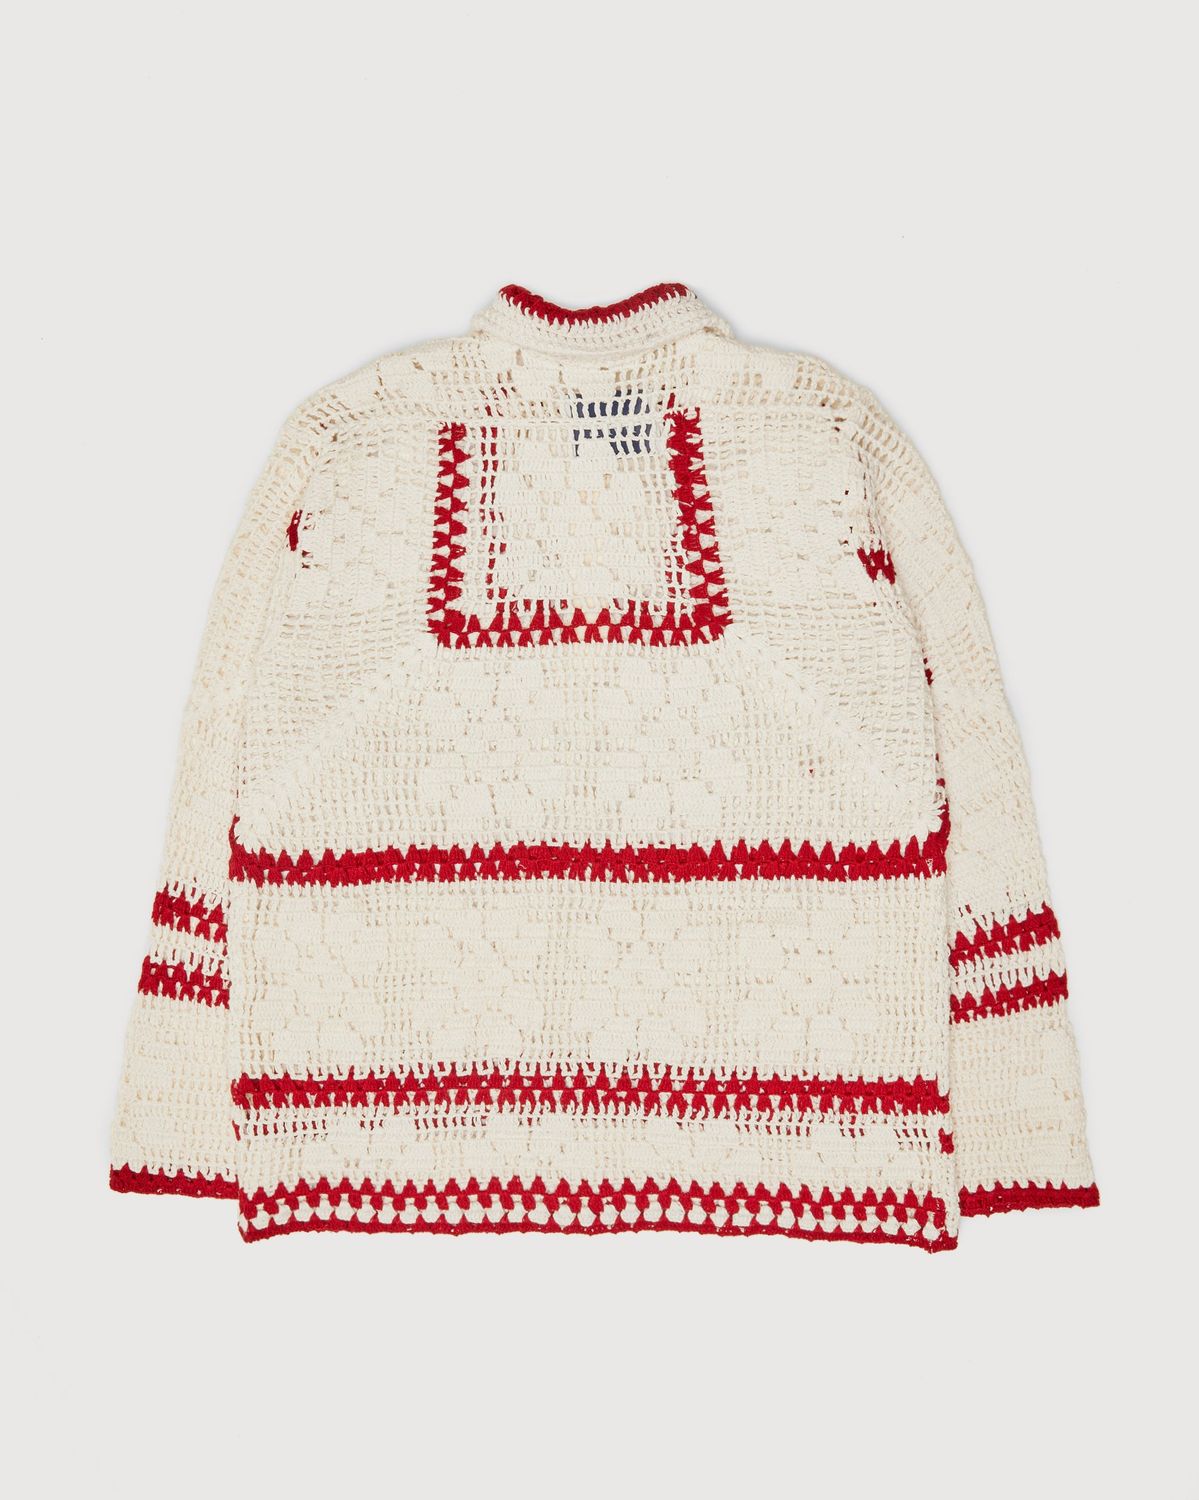 Bode – Mockneck Crochet Pullover White Red - Sweats - Beige - Image 2